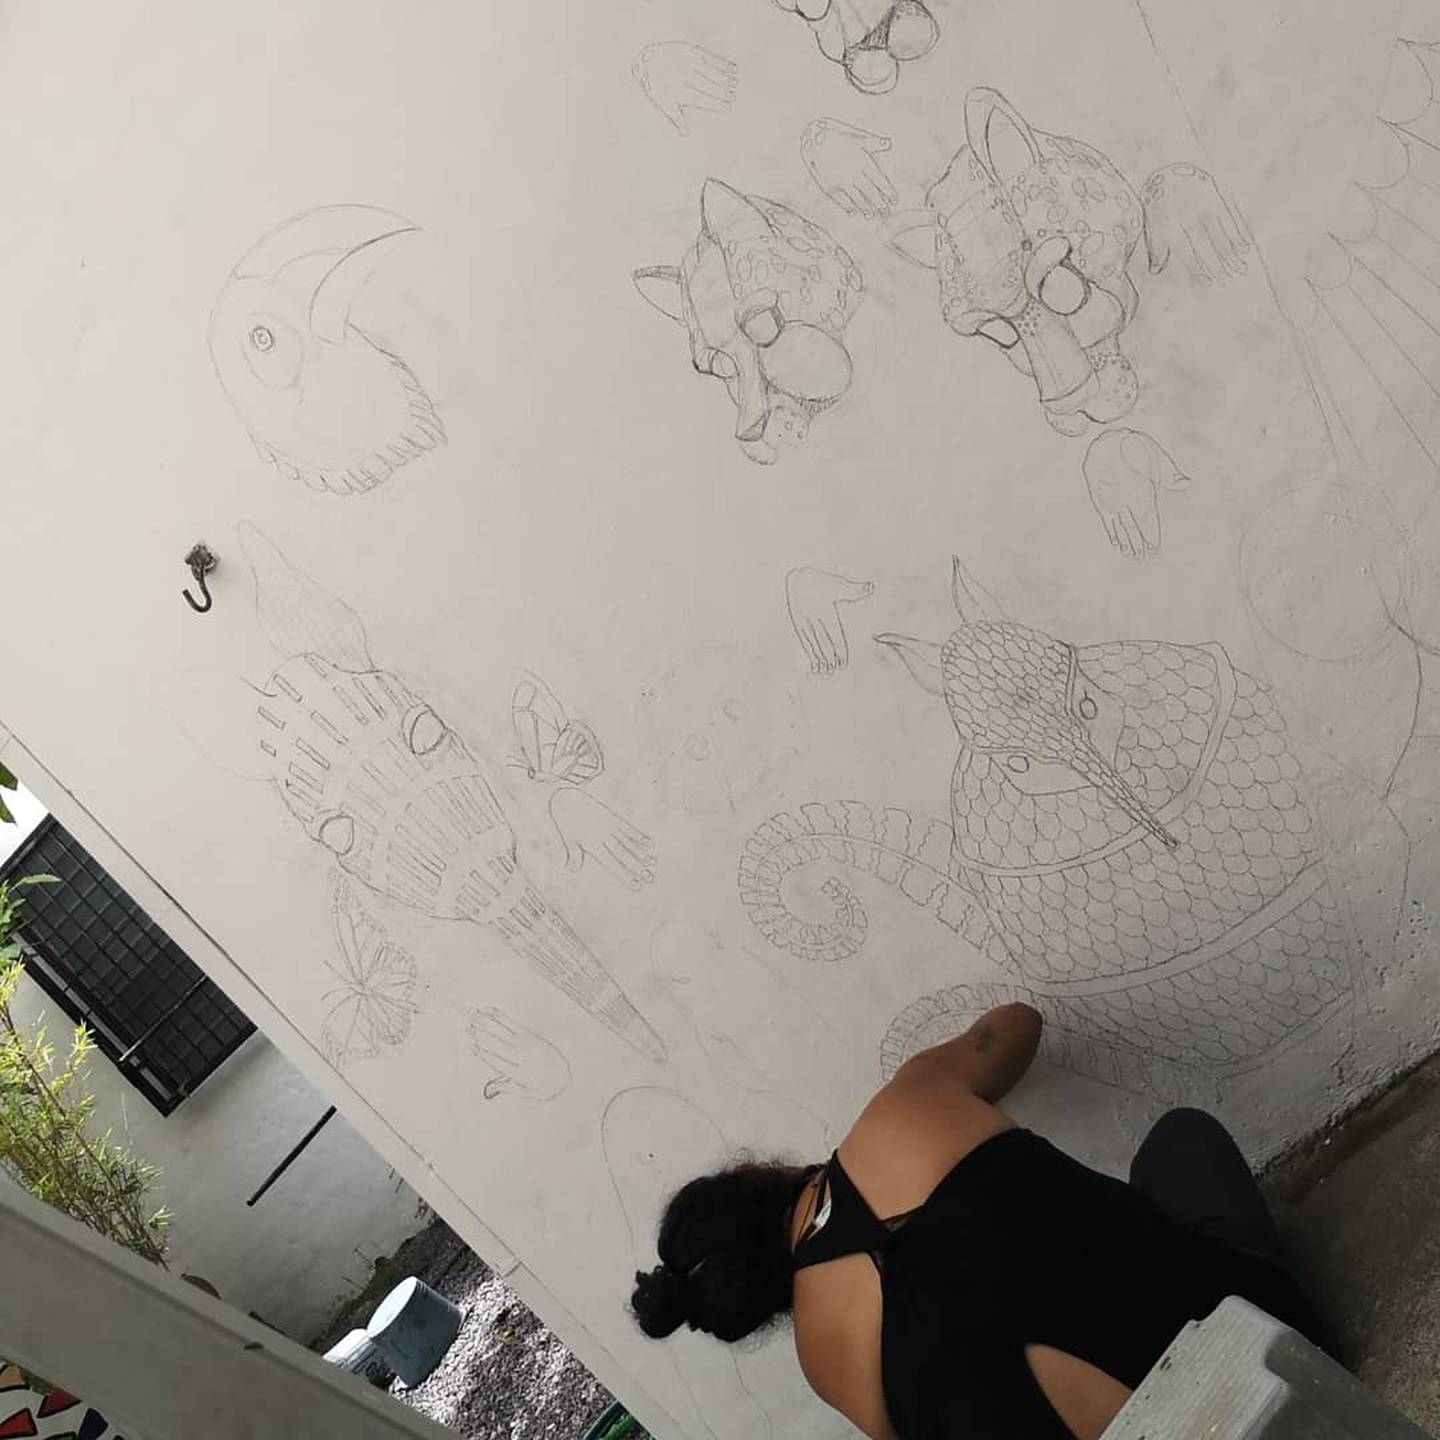 Pintar las paredes de la casa a partir de un boceto hecho por la artista Laura Chevez, le ayuda a Sol Cisneros a desestresarse en tiempos de pandemia